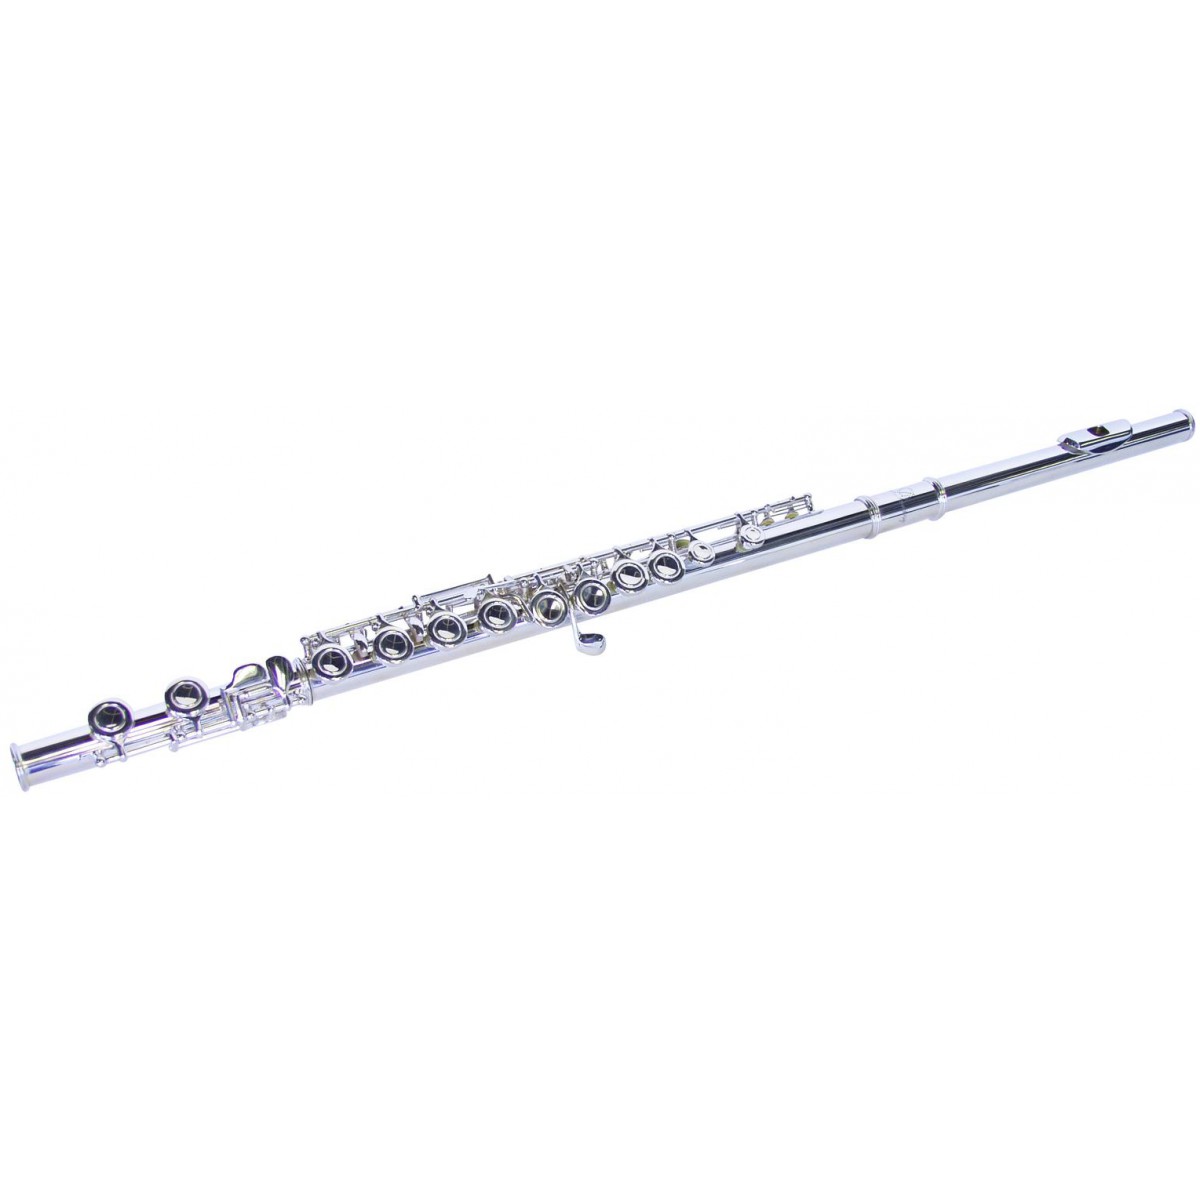 Fotografie Dimavery QP-10 C flétna příčná, postříbřená, předsunutá G klapka,